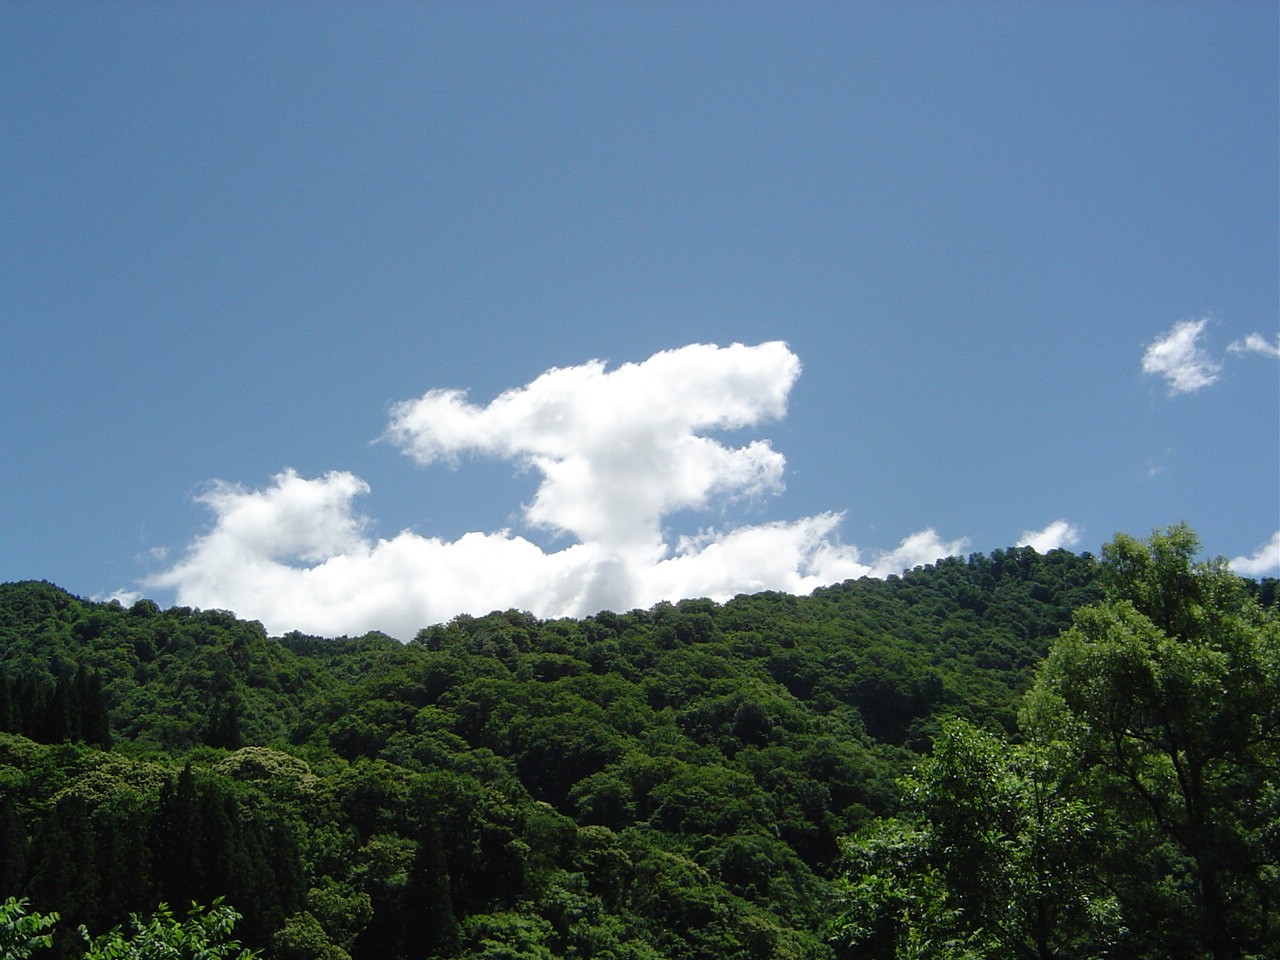 Cloud (277k image)